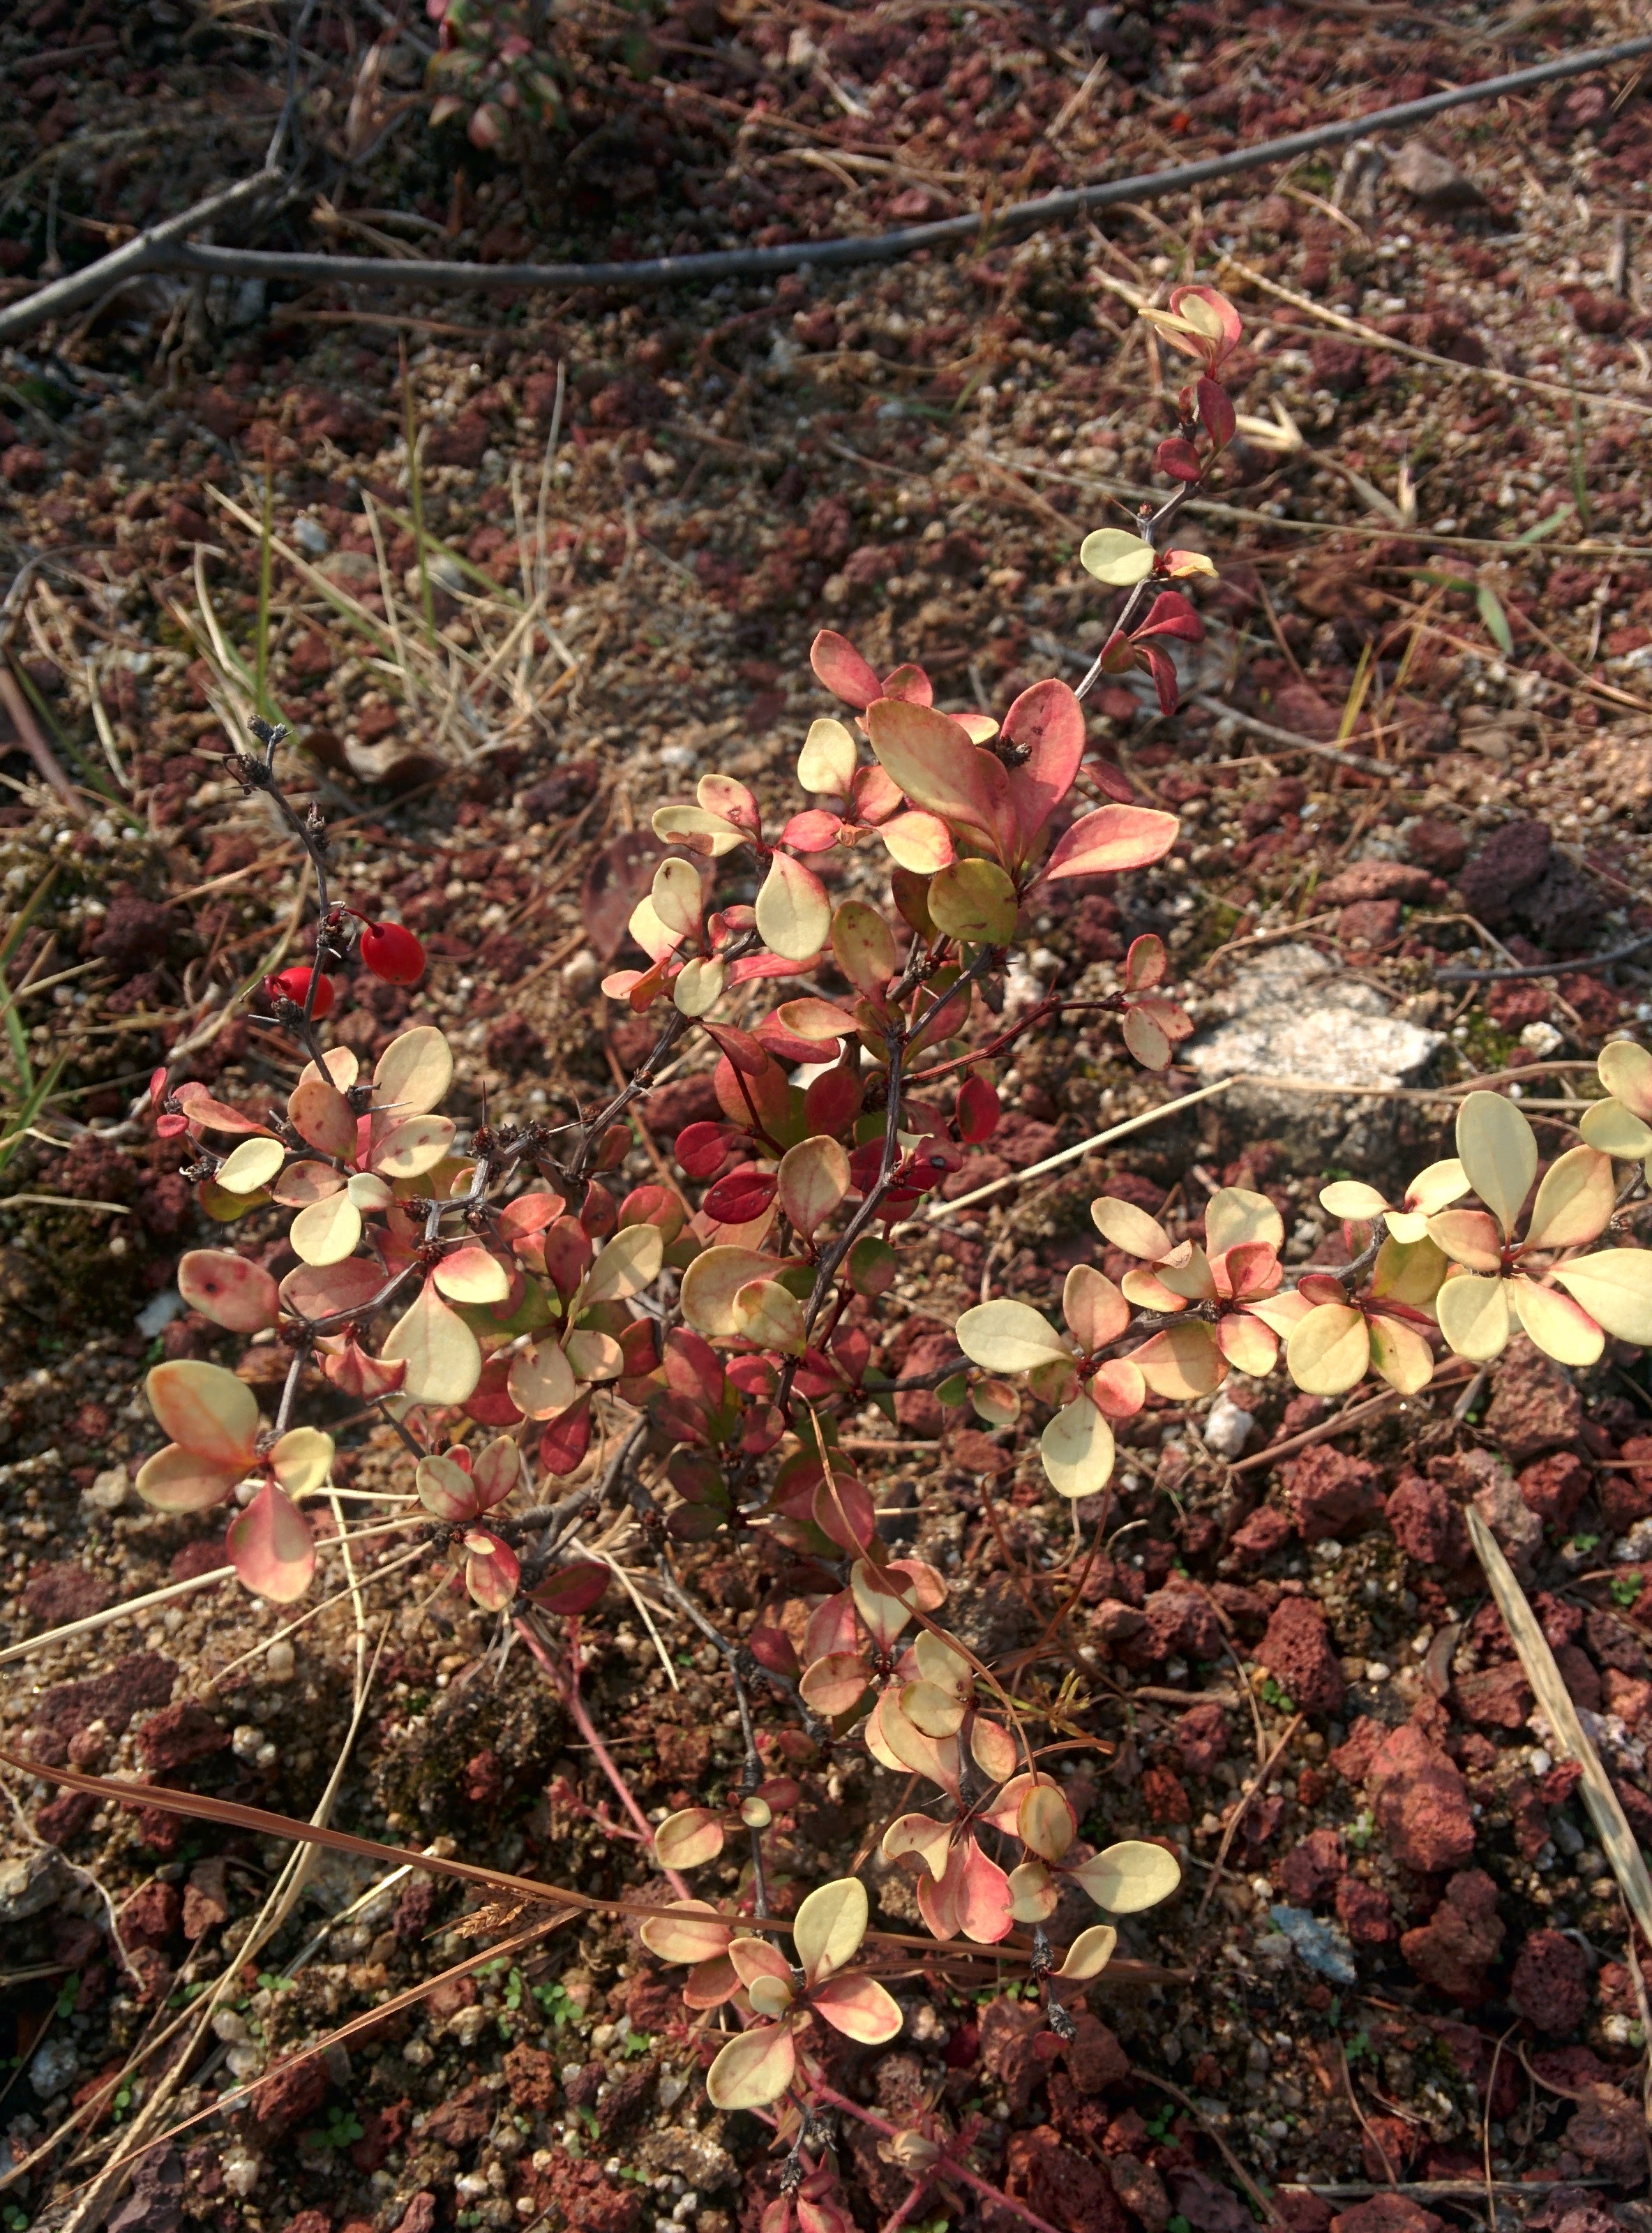 IMG_20151016_122650.jpg 가시가 달린 키작은 관목의 붉은색 열매, 흰색으로 물든 잎 -- 일본매자나무